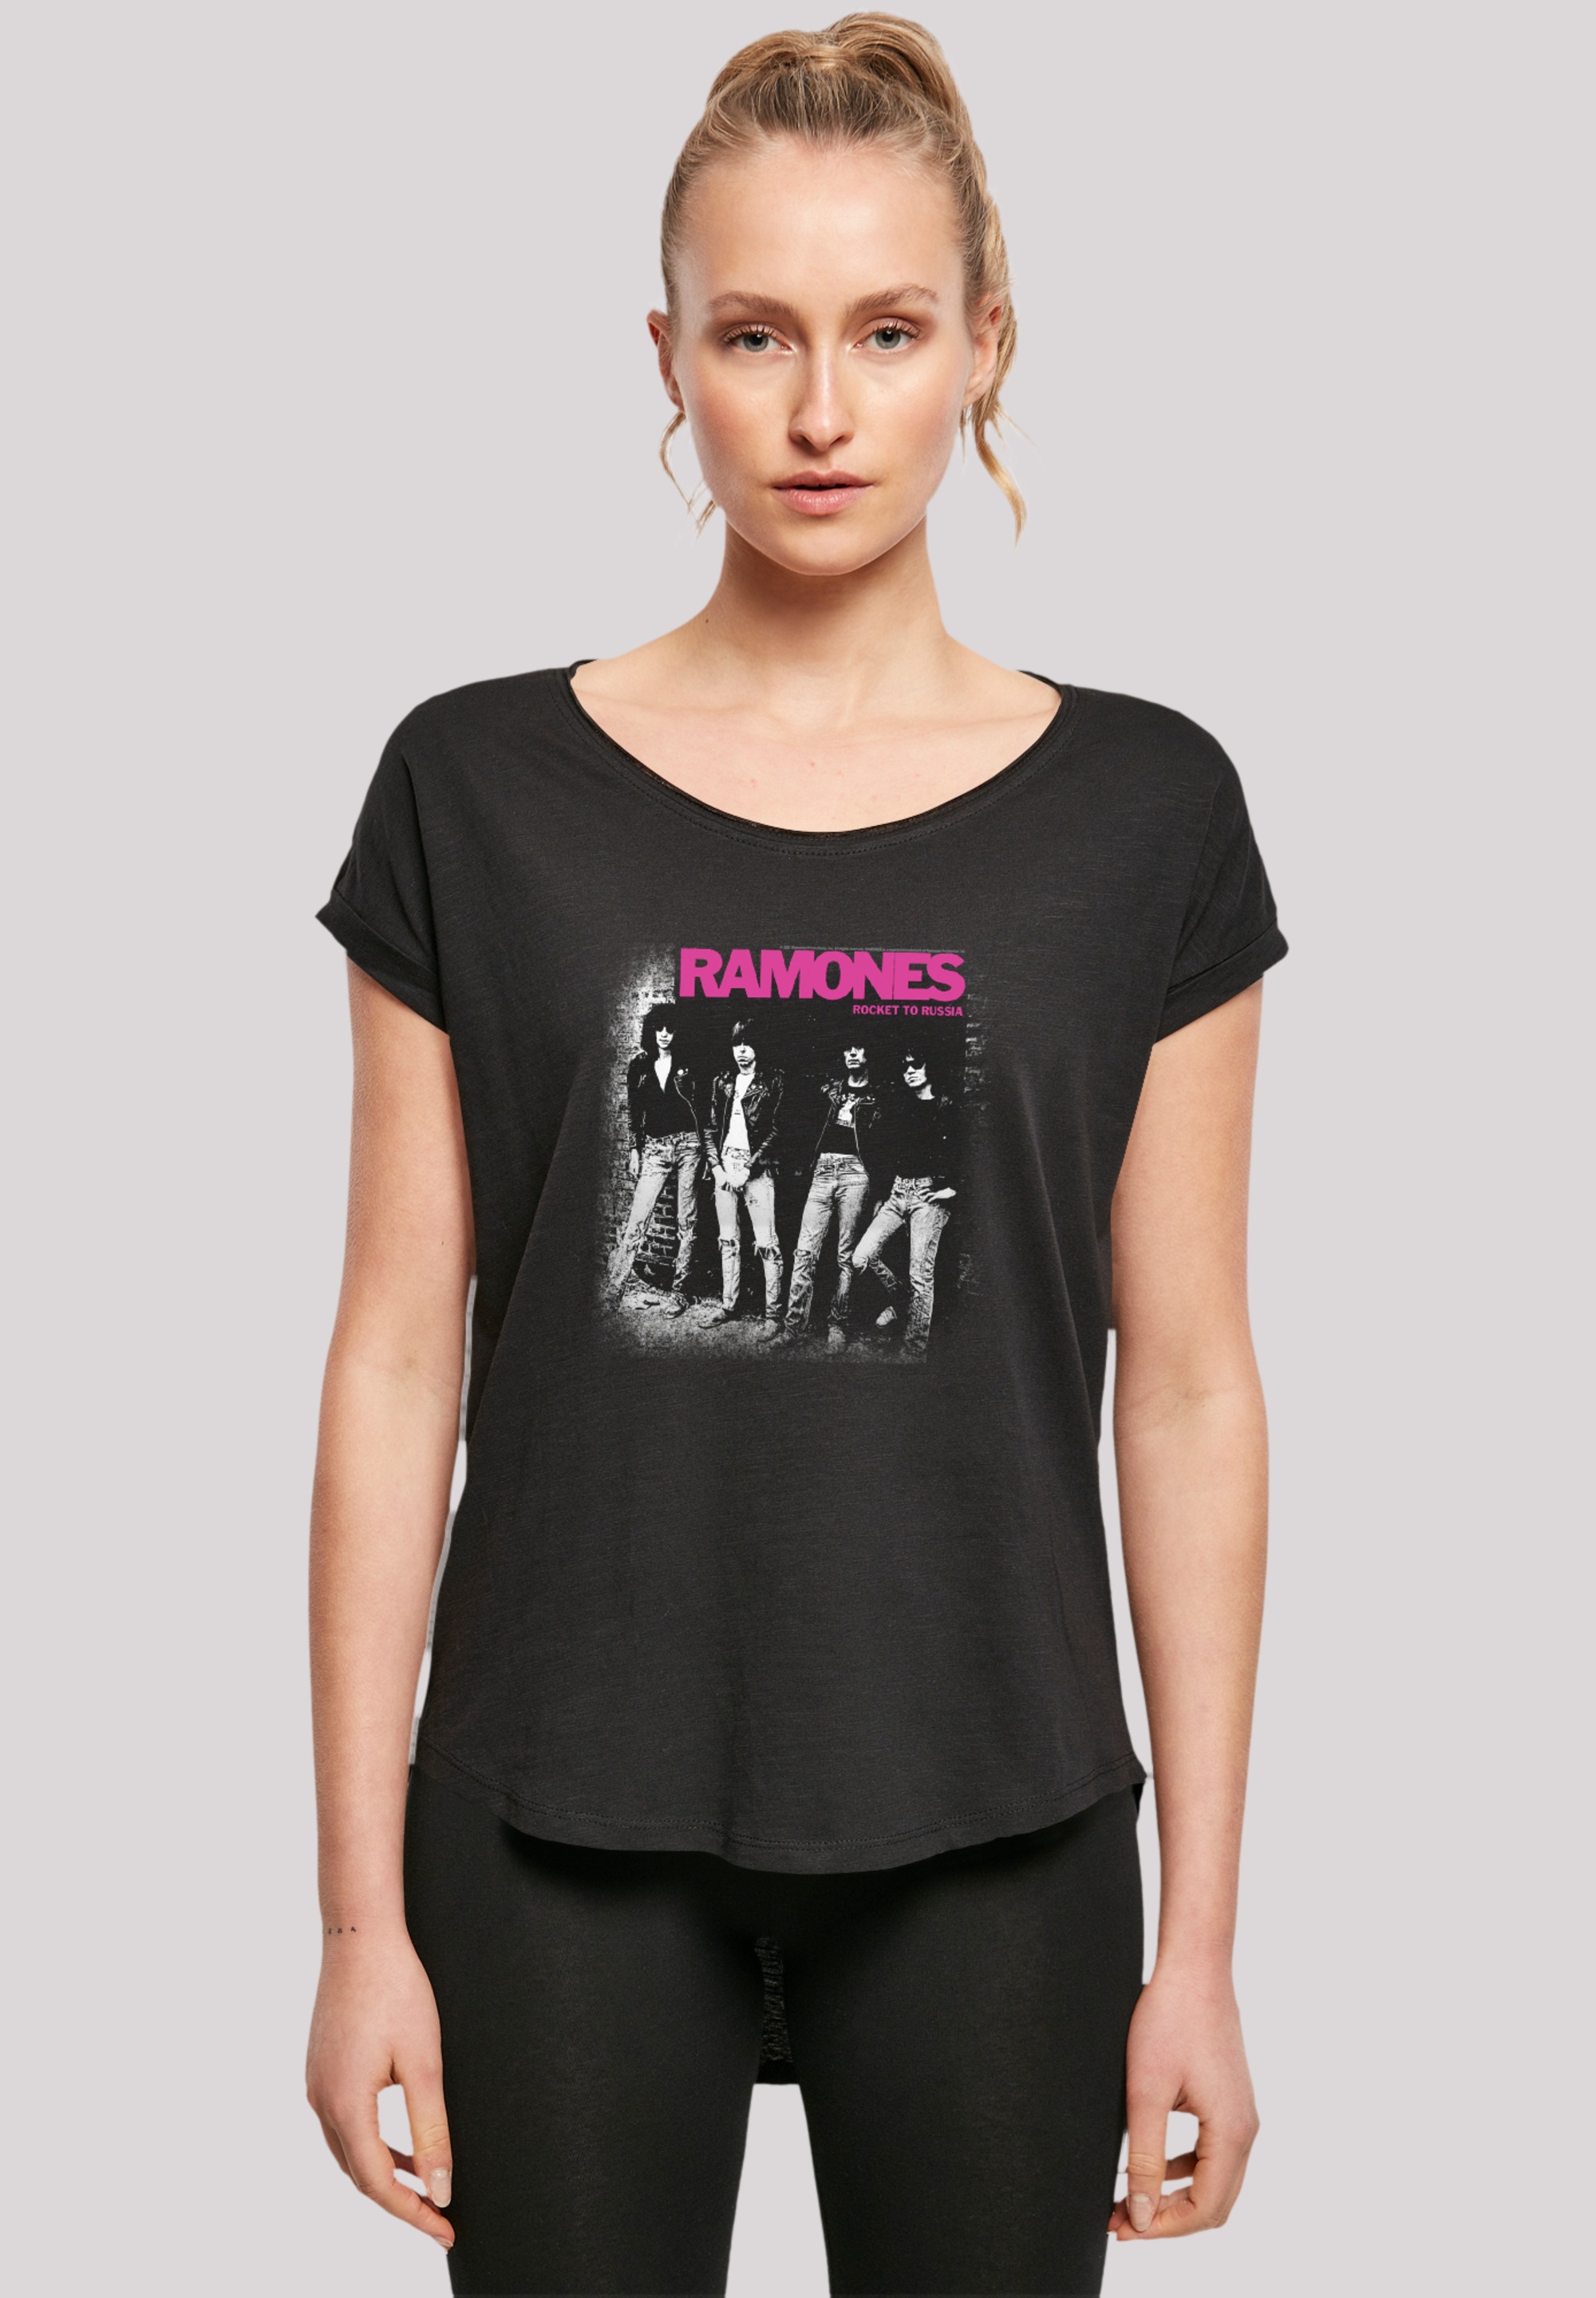 F4NT4STIC T-Shirt Rock Premium Rock-Musik für | Musik Band, Band«, »Ramones Qualität, BAUR kaufen